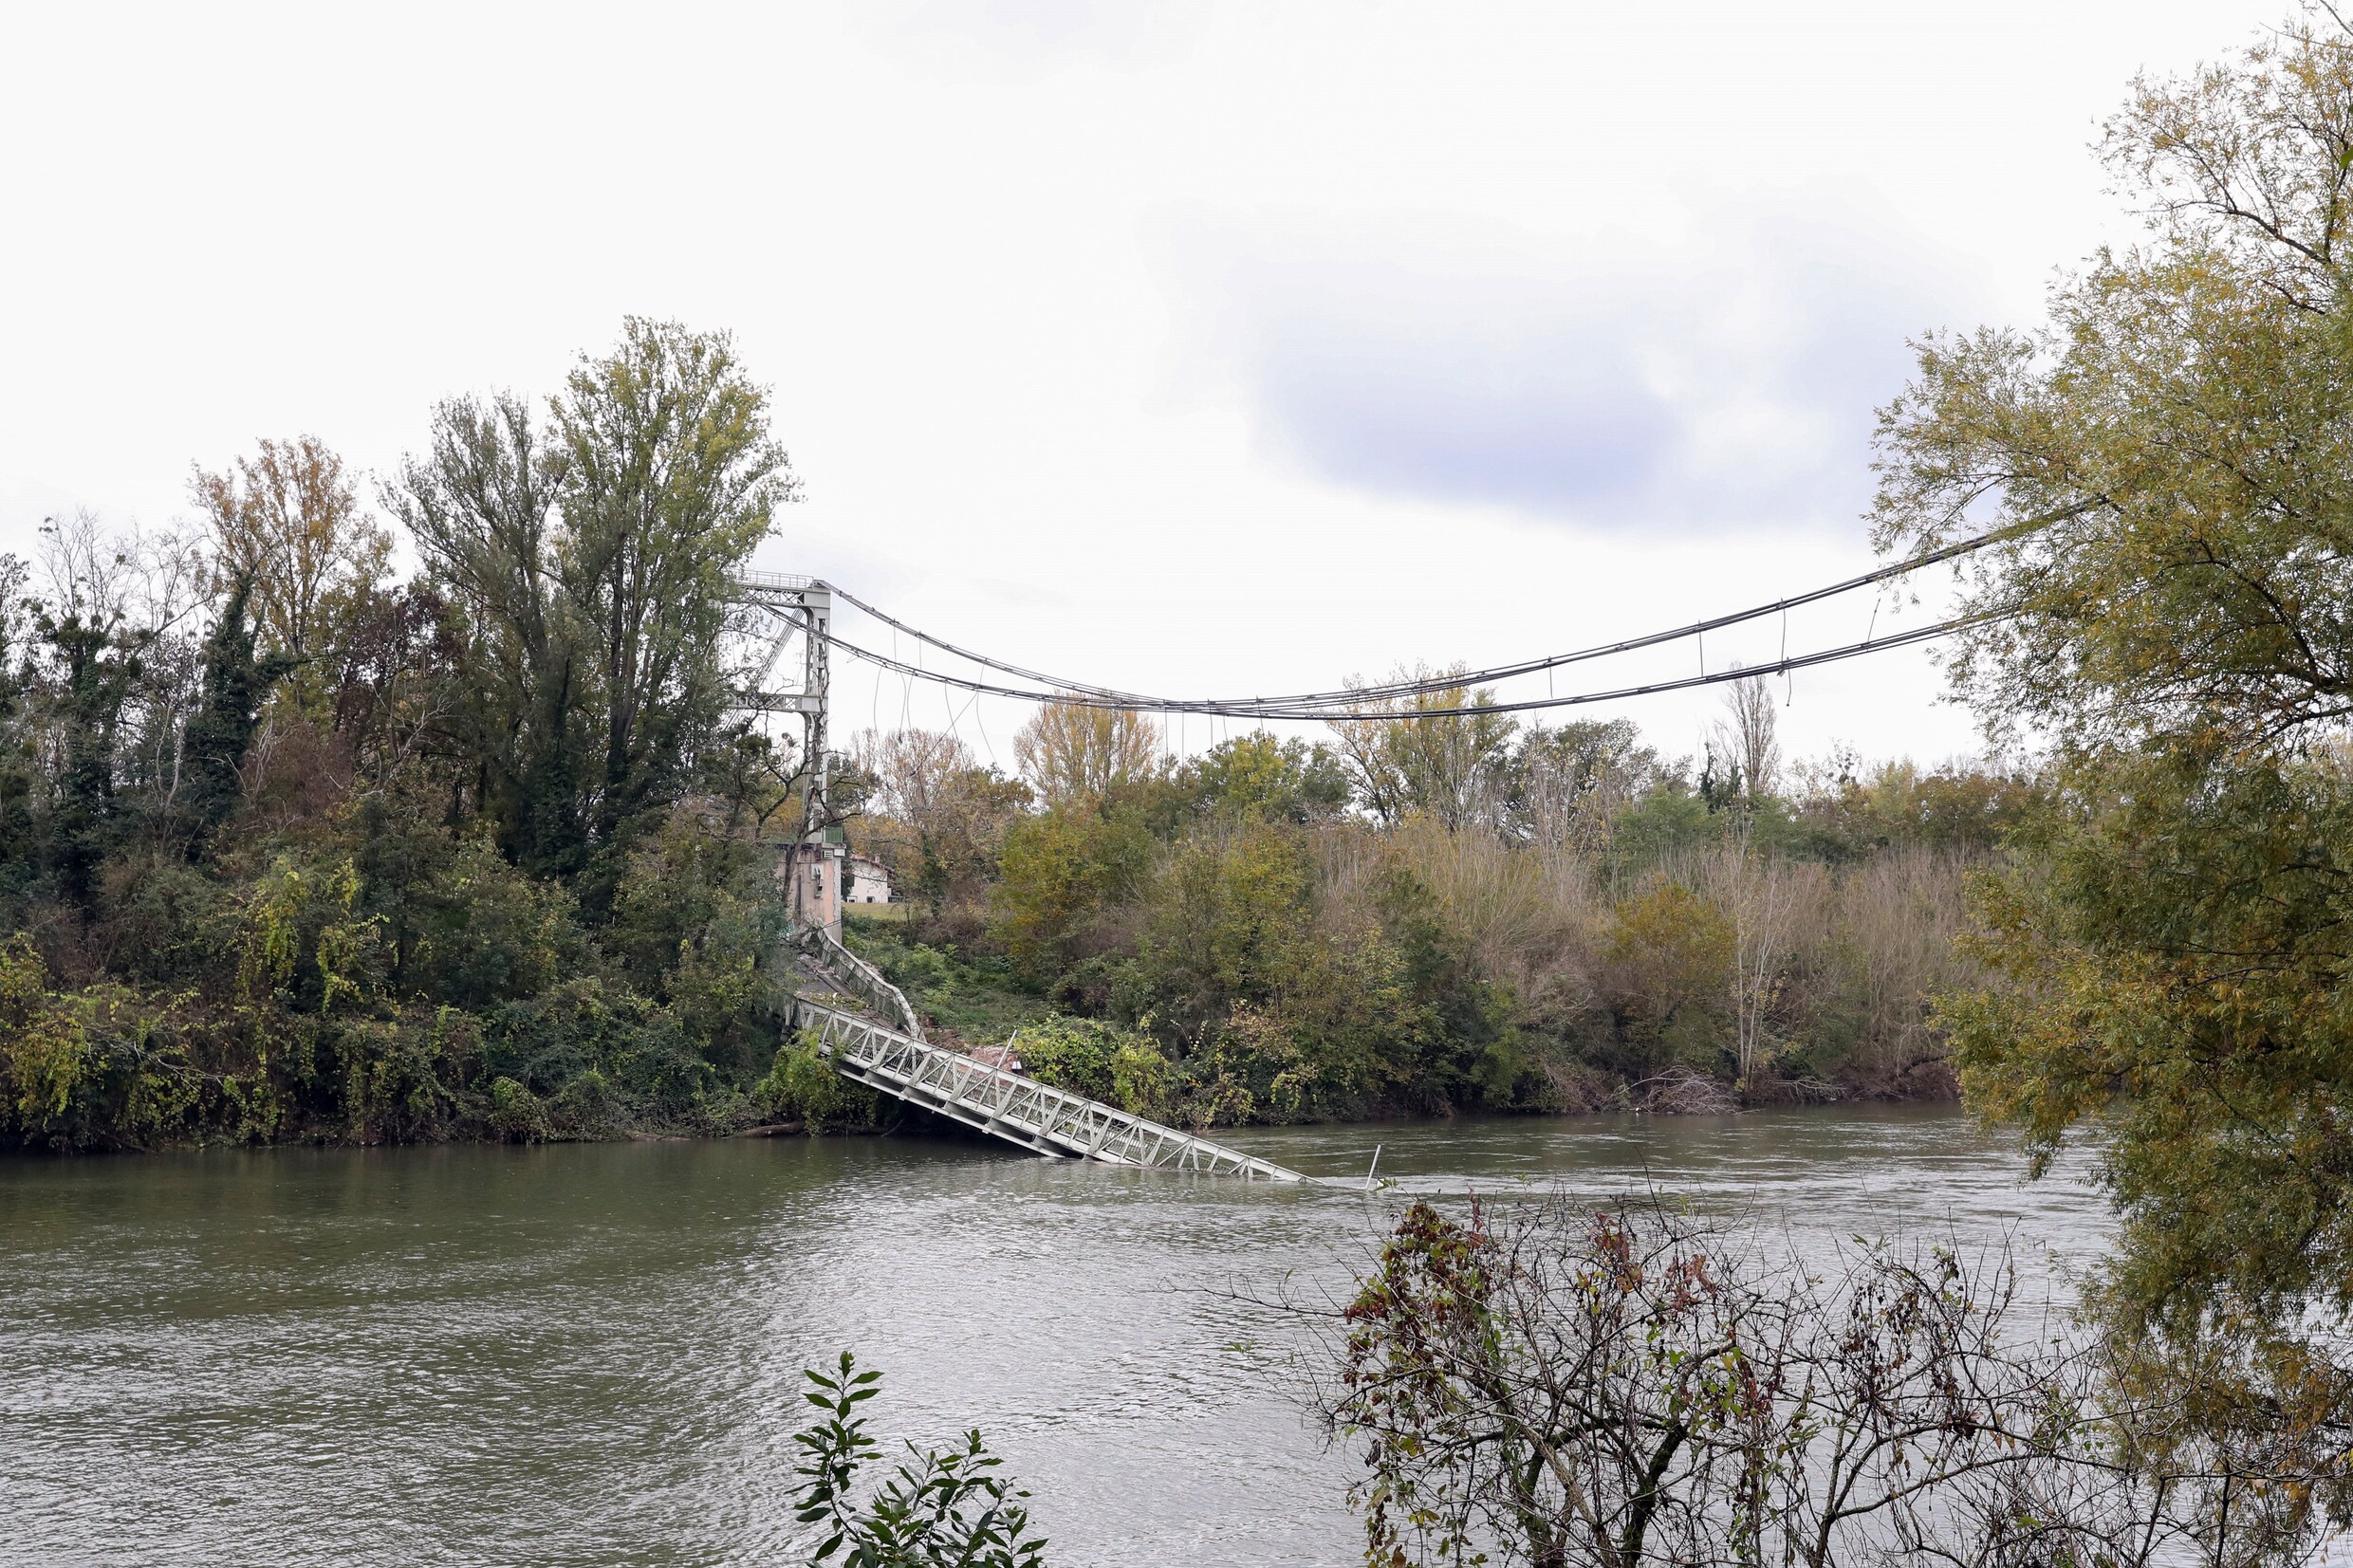 Ingestorte brug in Zuid-Franse Tarn: ‘Vrachtwagen woog dubbele van toegelaten gewicht’